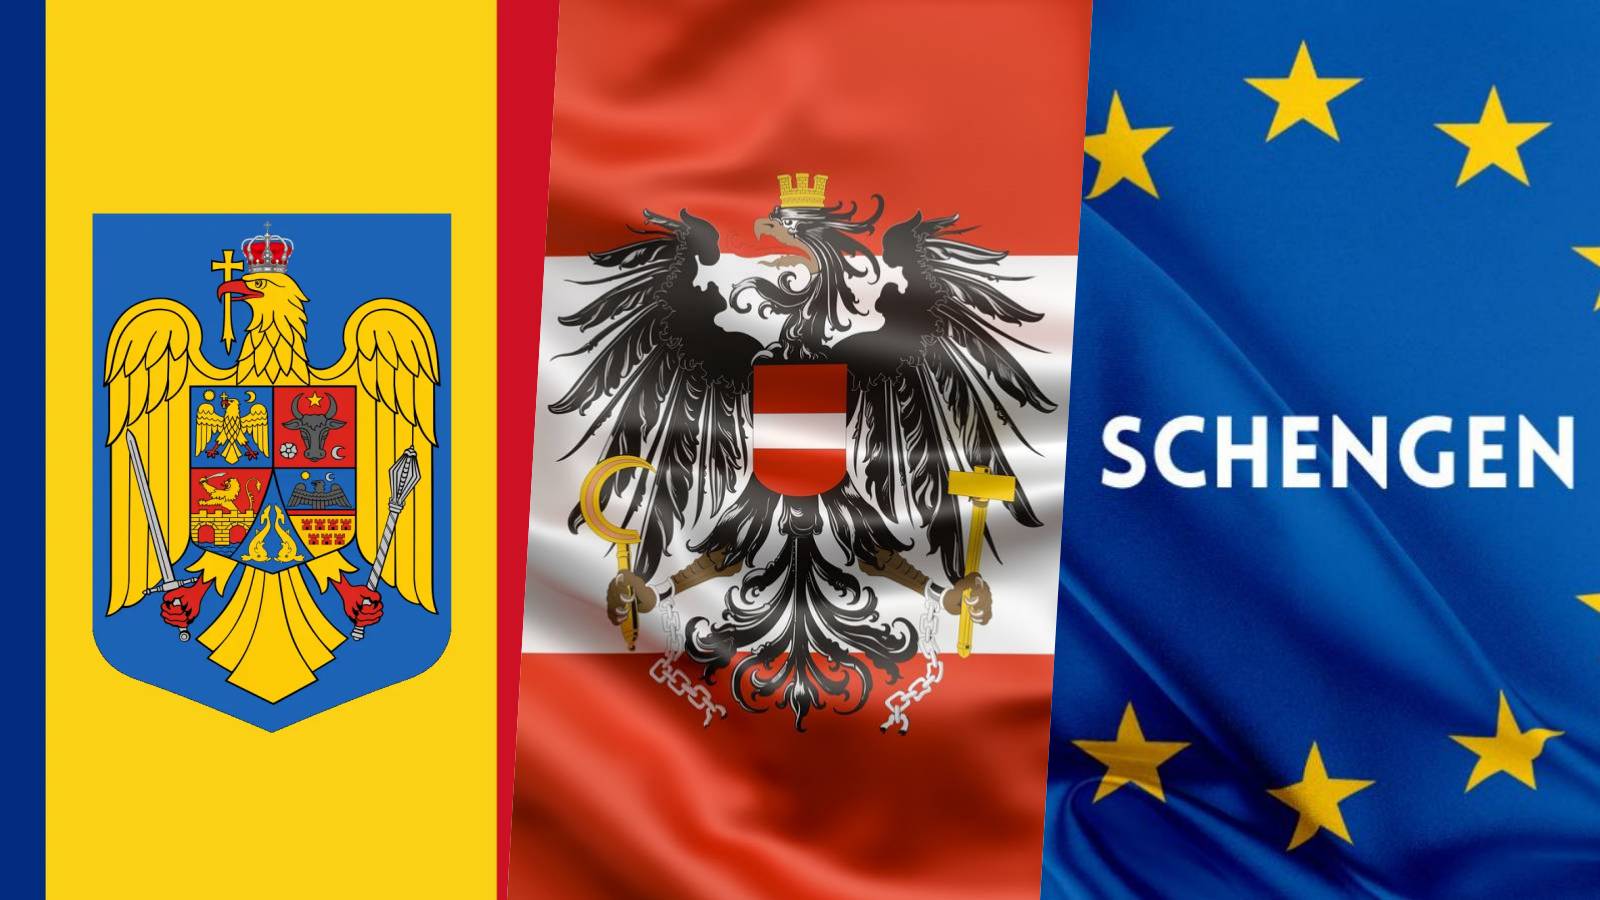 Austria Karl Nehammer wywiera nowy oficjalny nacisk W OSTATNIM MINUCIE wpływa na przystąpienie Rumunii do Schengen